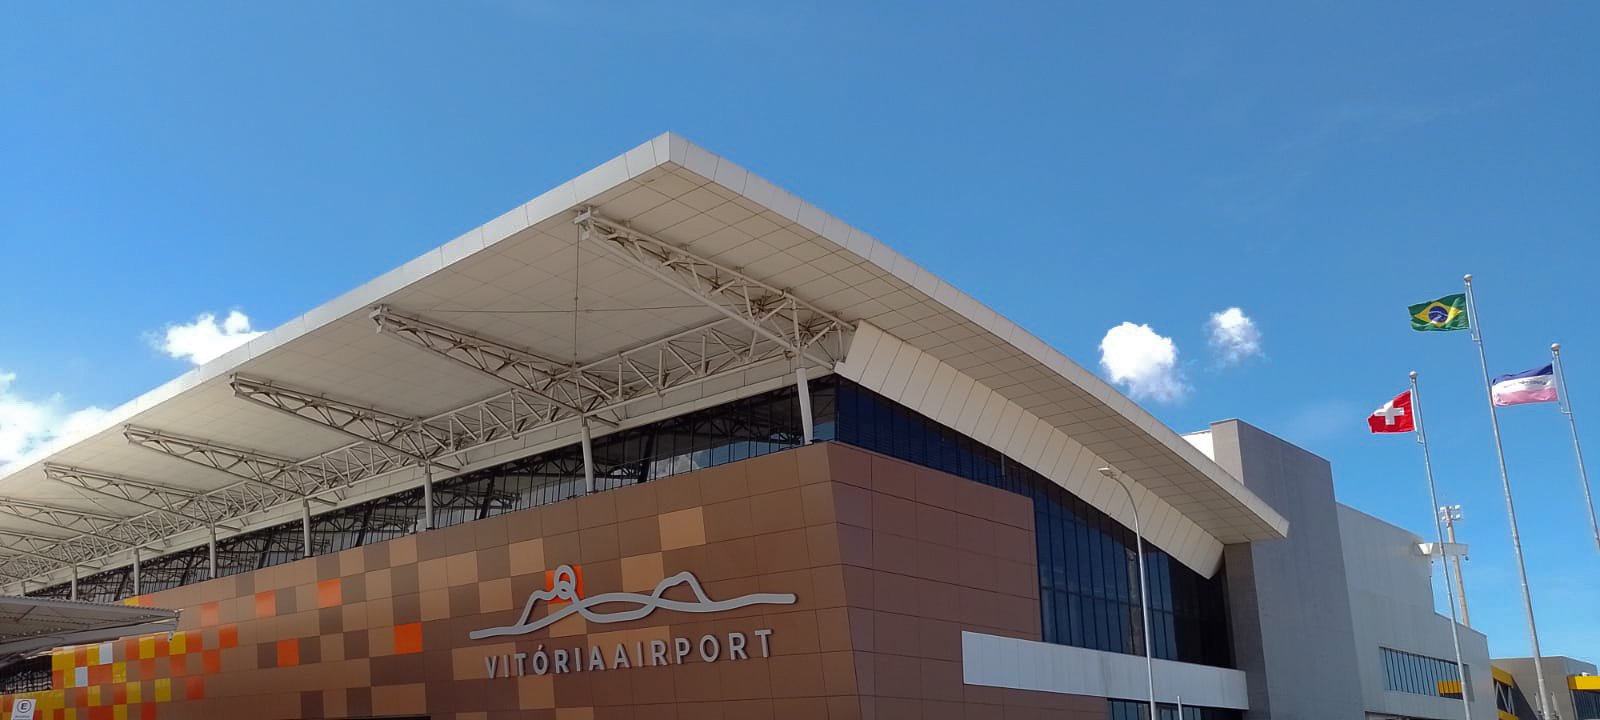 Aeroporto de Vitória após a expansão e concessão a uma empresa suíça